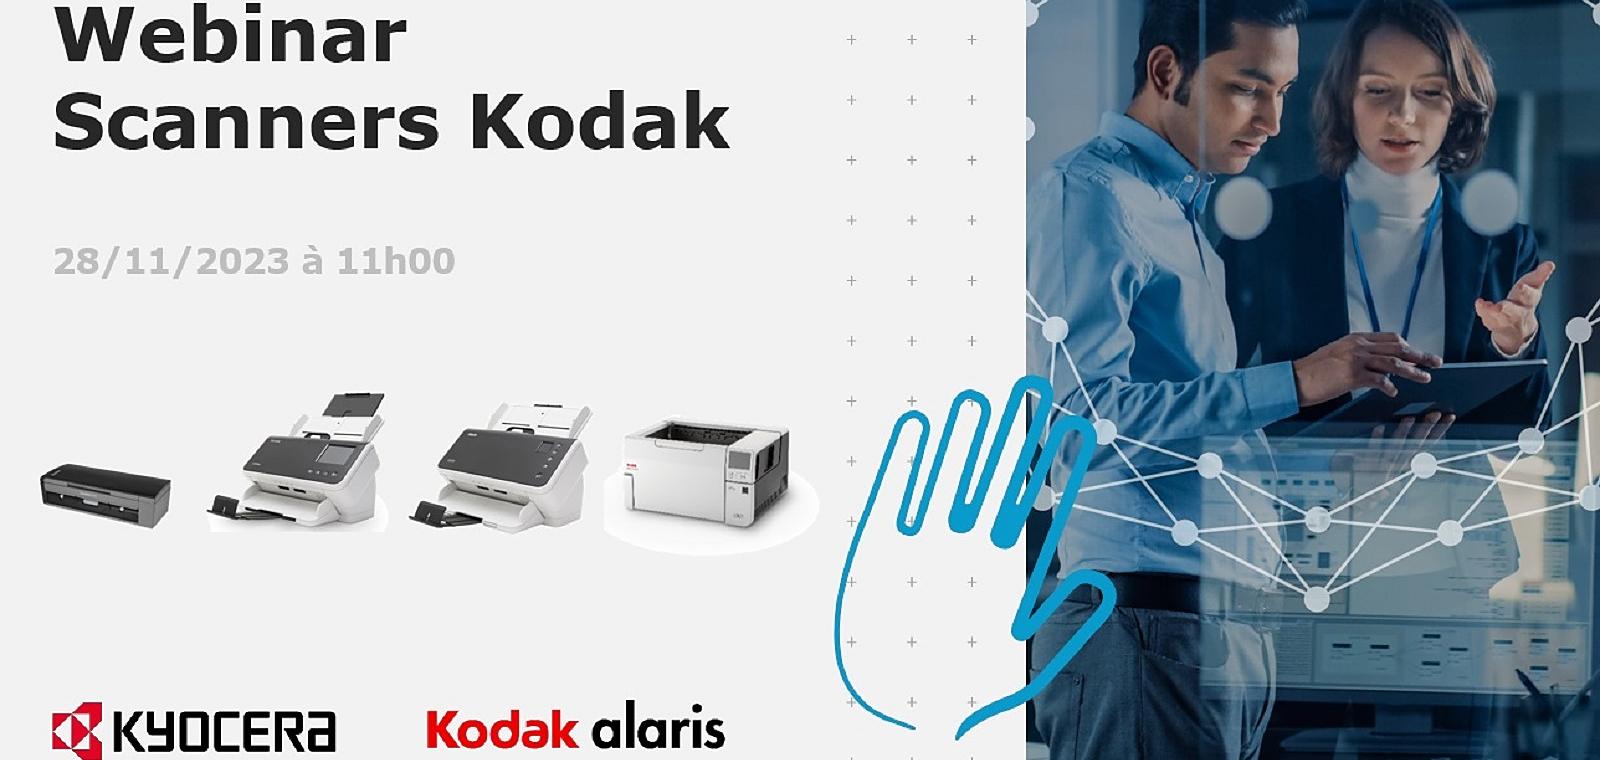 Présentation des scanners KODAK